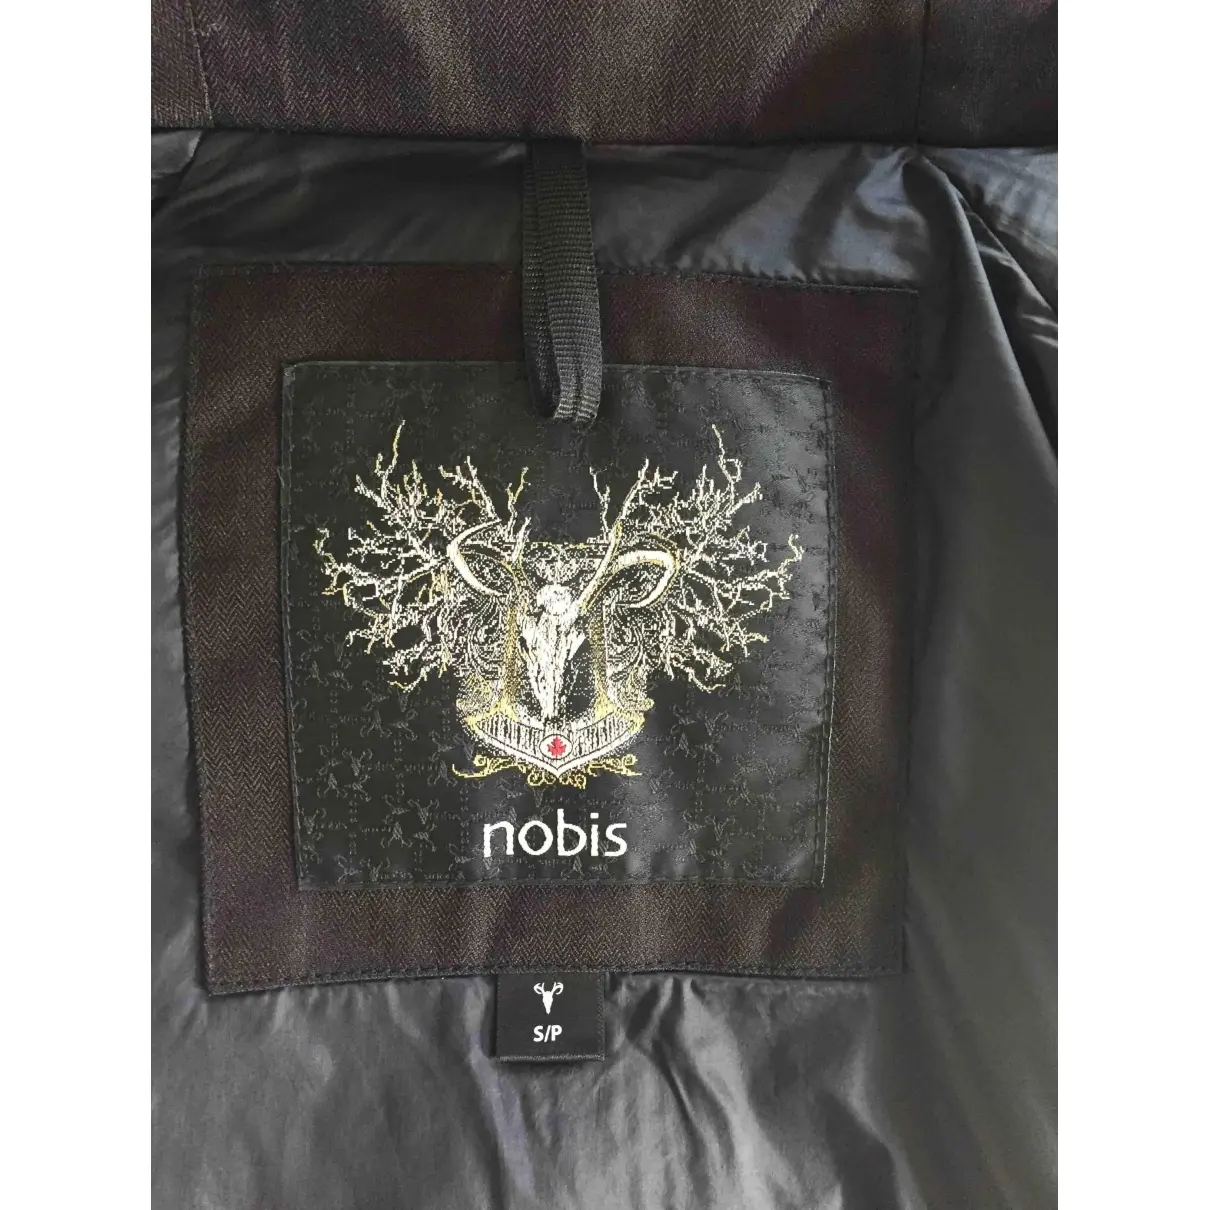 Buy nobis Black Polyester Coat online